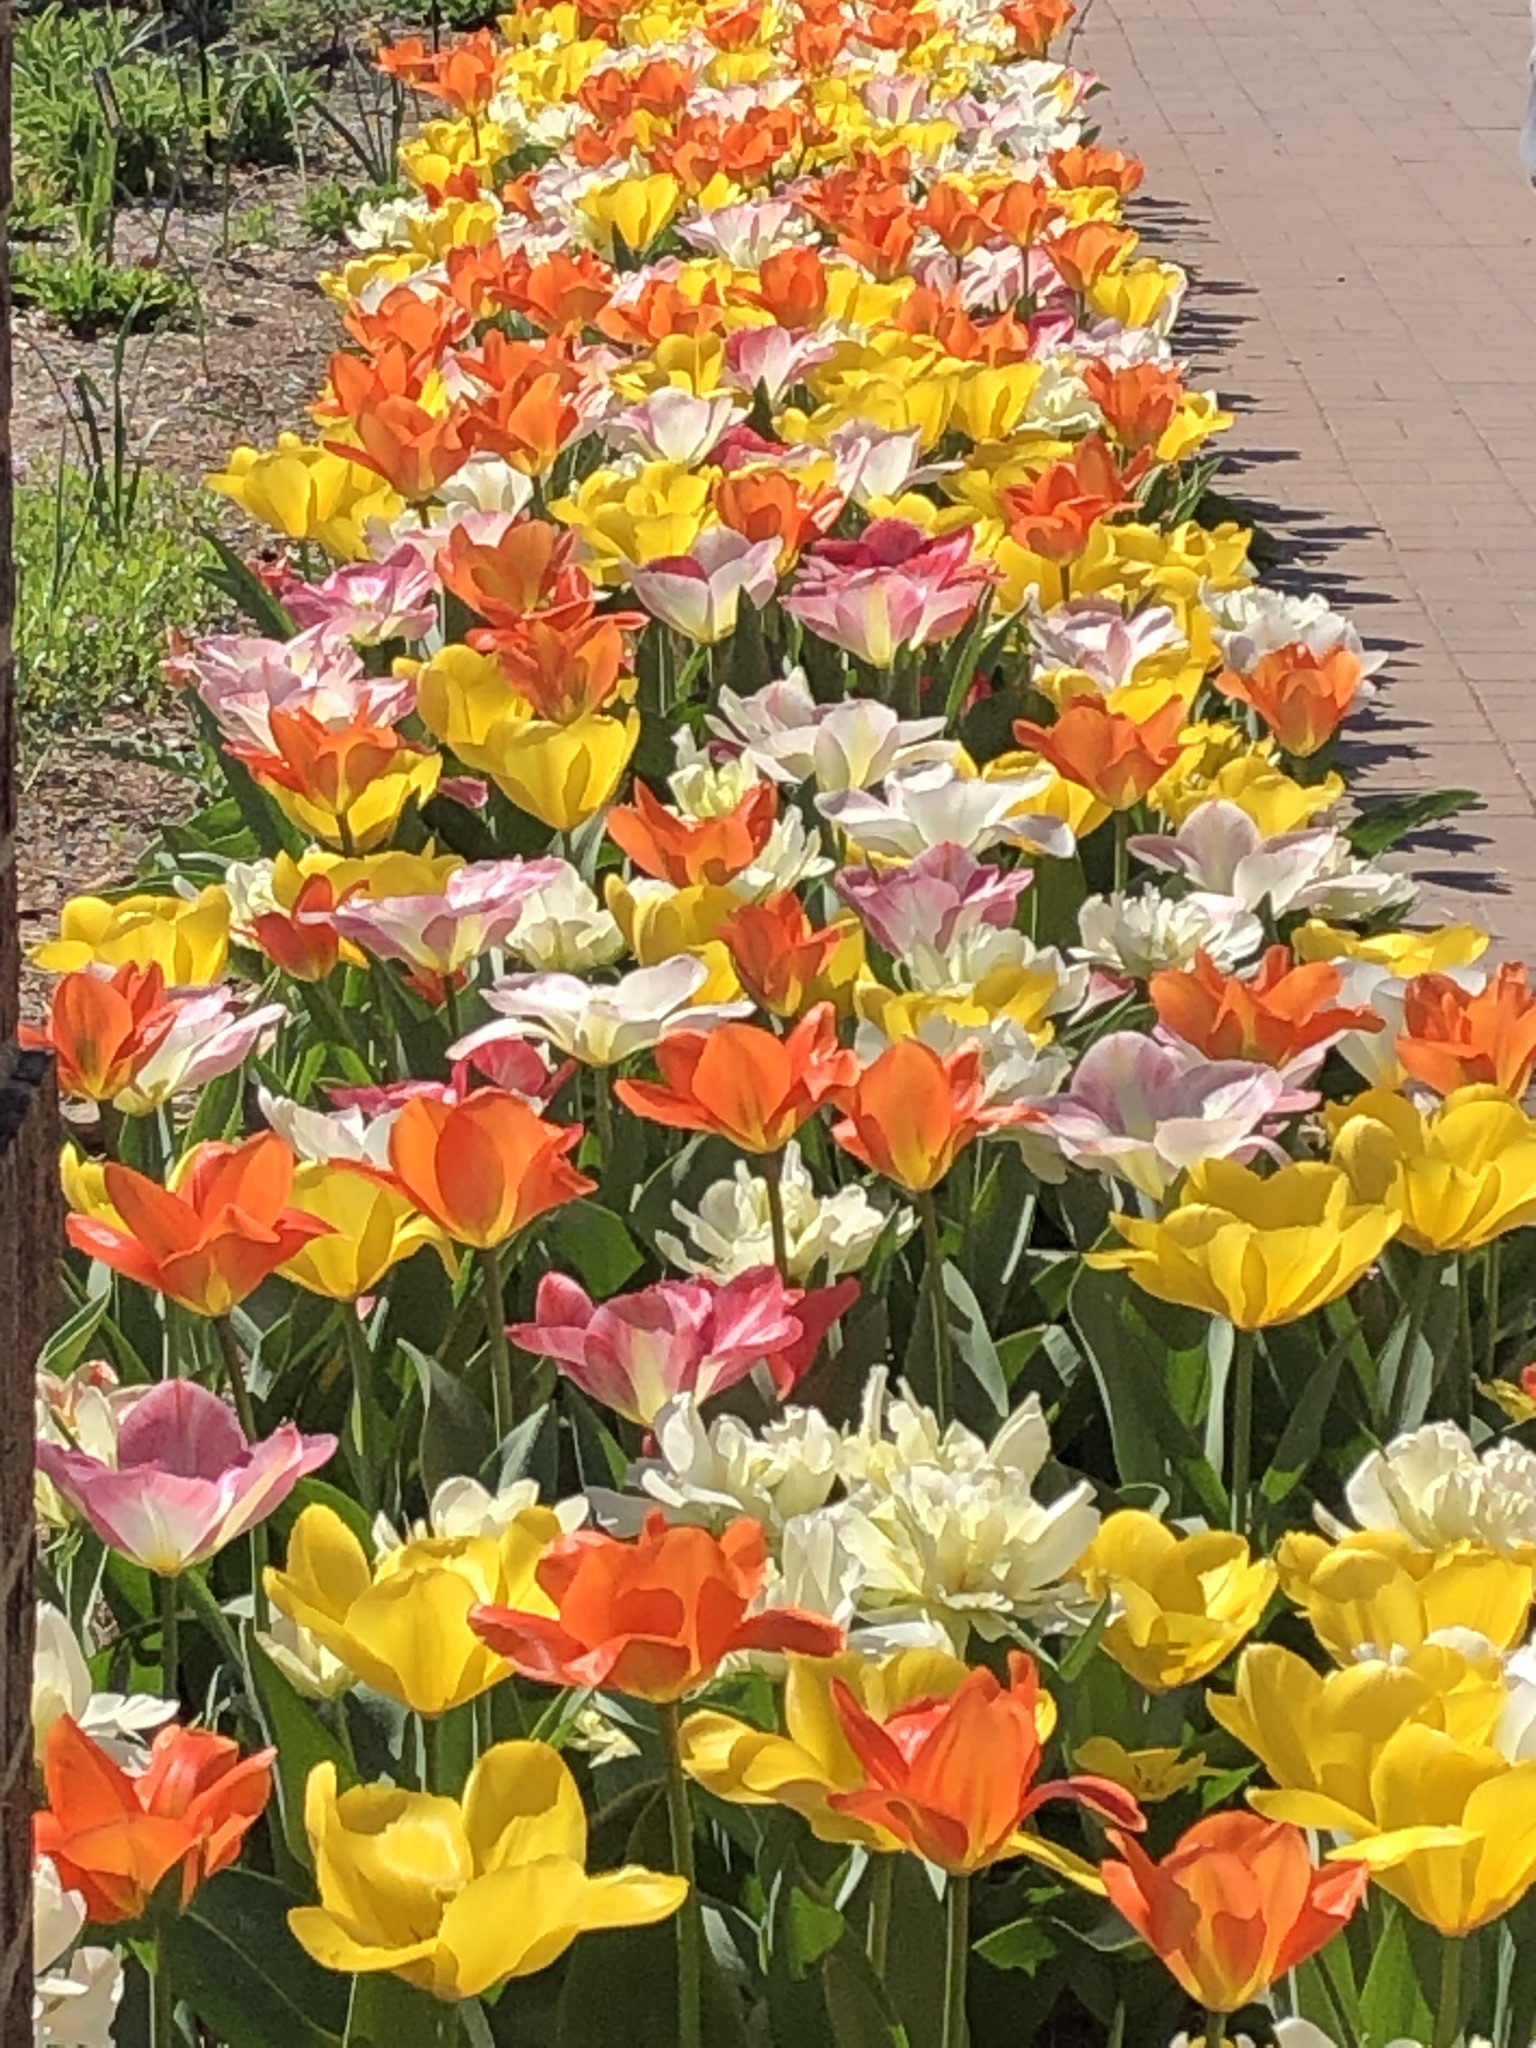 tulips at Purdue University campus sidewalk